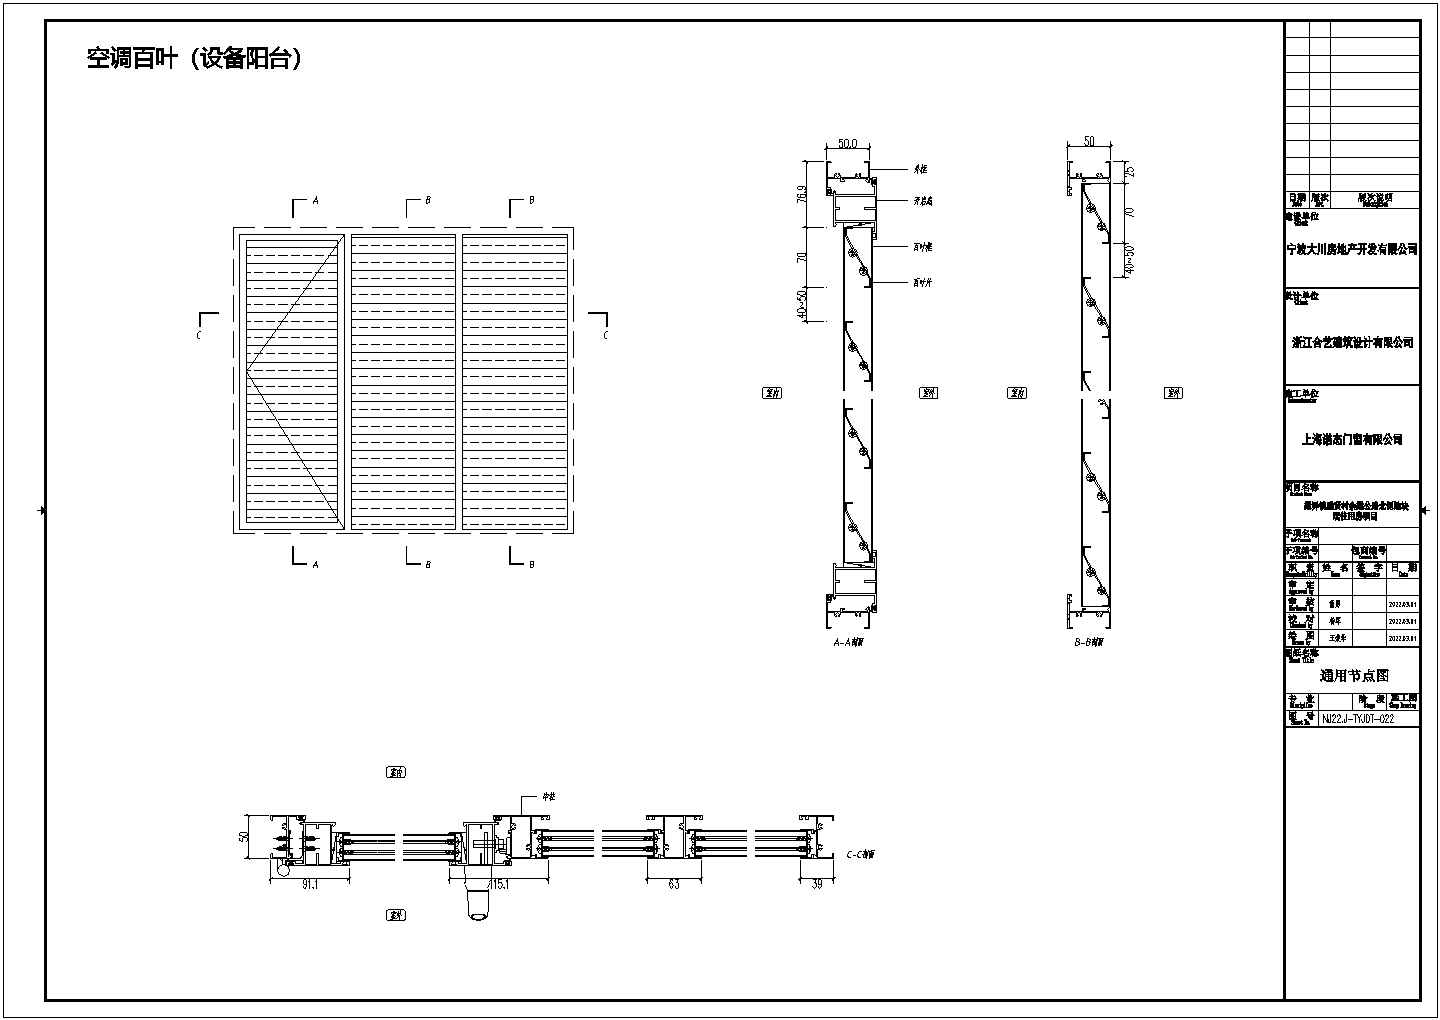 中式中式建筑门窗深化图纸图纸图纸图纸1223344445511111111111111111111